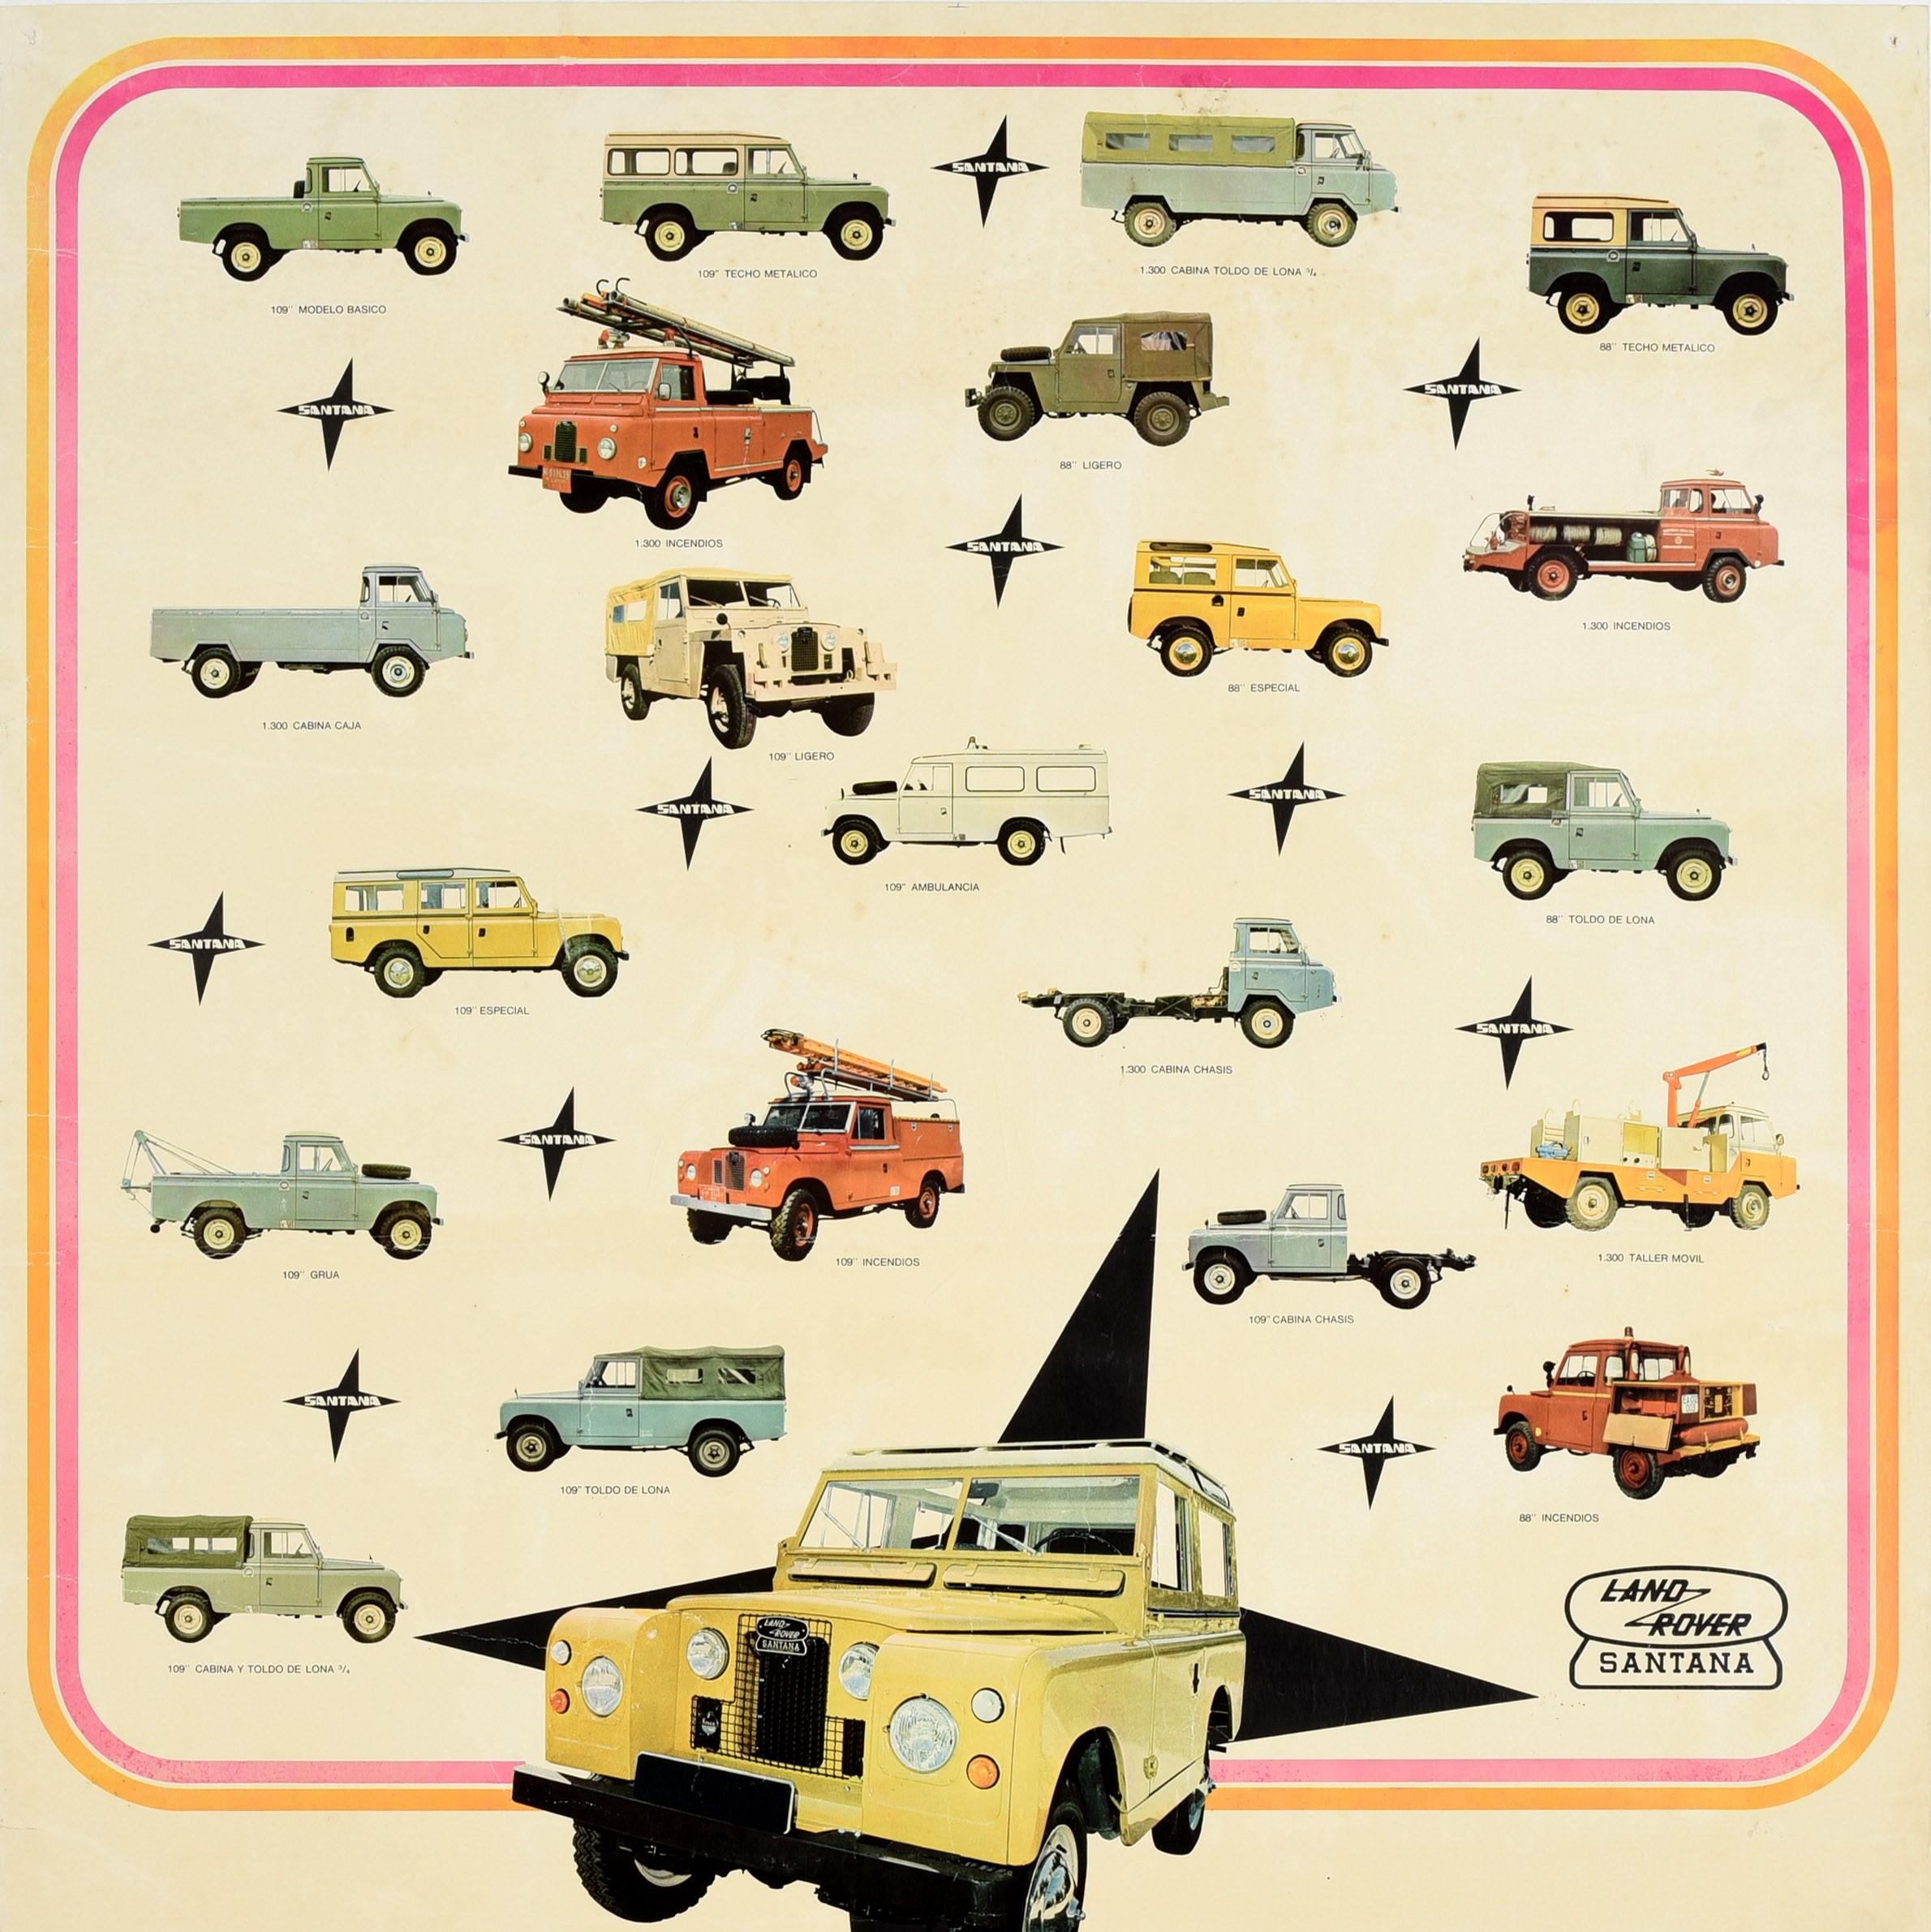 Originales Vintage-Werbeplakat für Land-Rover Santana Fernando Rodriguez Metalurgica de Santa Ana mit Abbildungen von geländegängigen Land Rover Pick-up-Jeep-Modellen mit schwarzen Sternformen innerhalb eines rosa-orangenen Rahmens, einem gelben